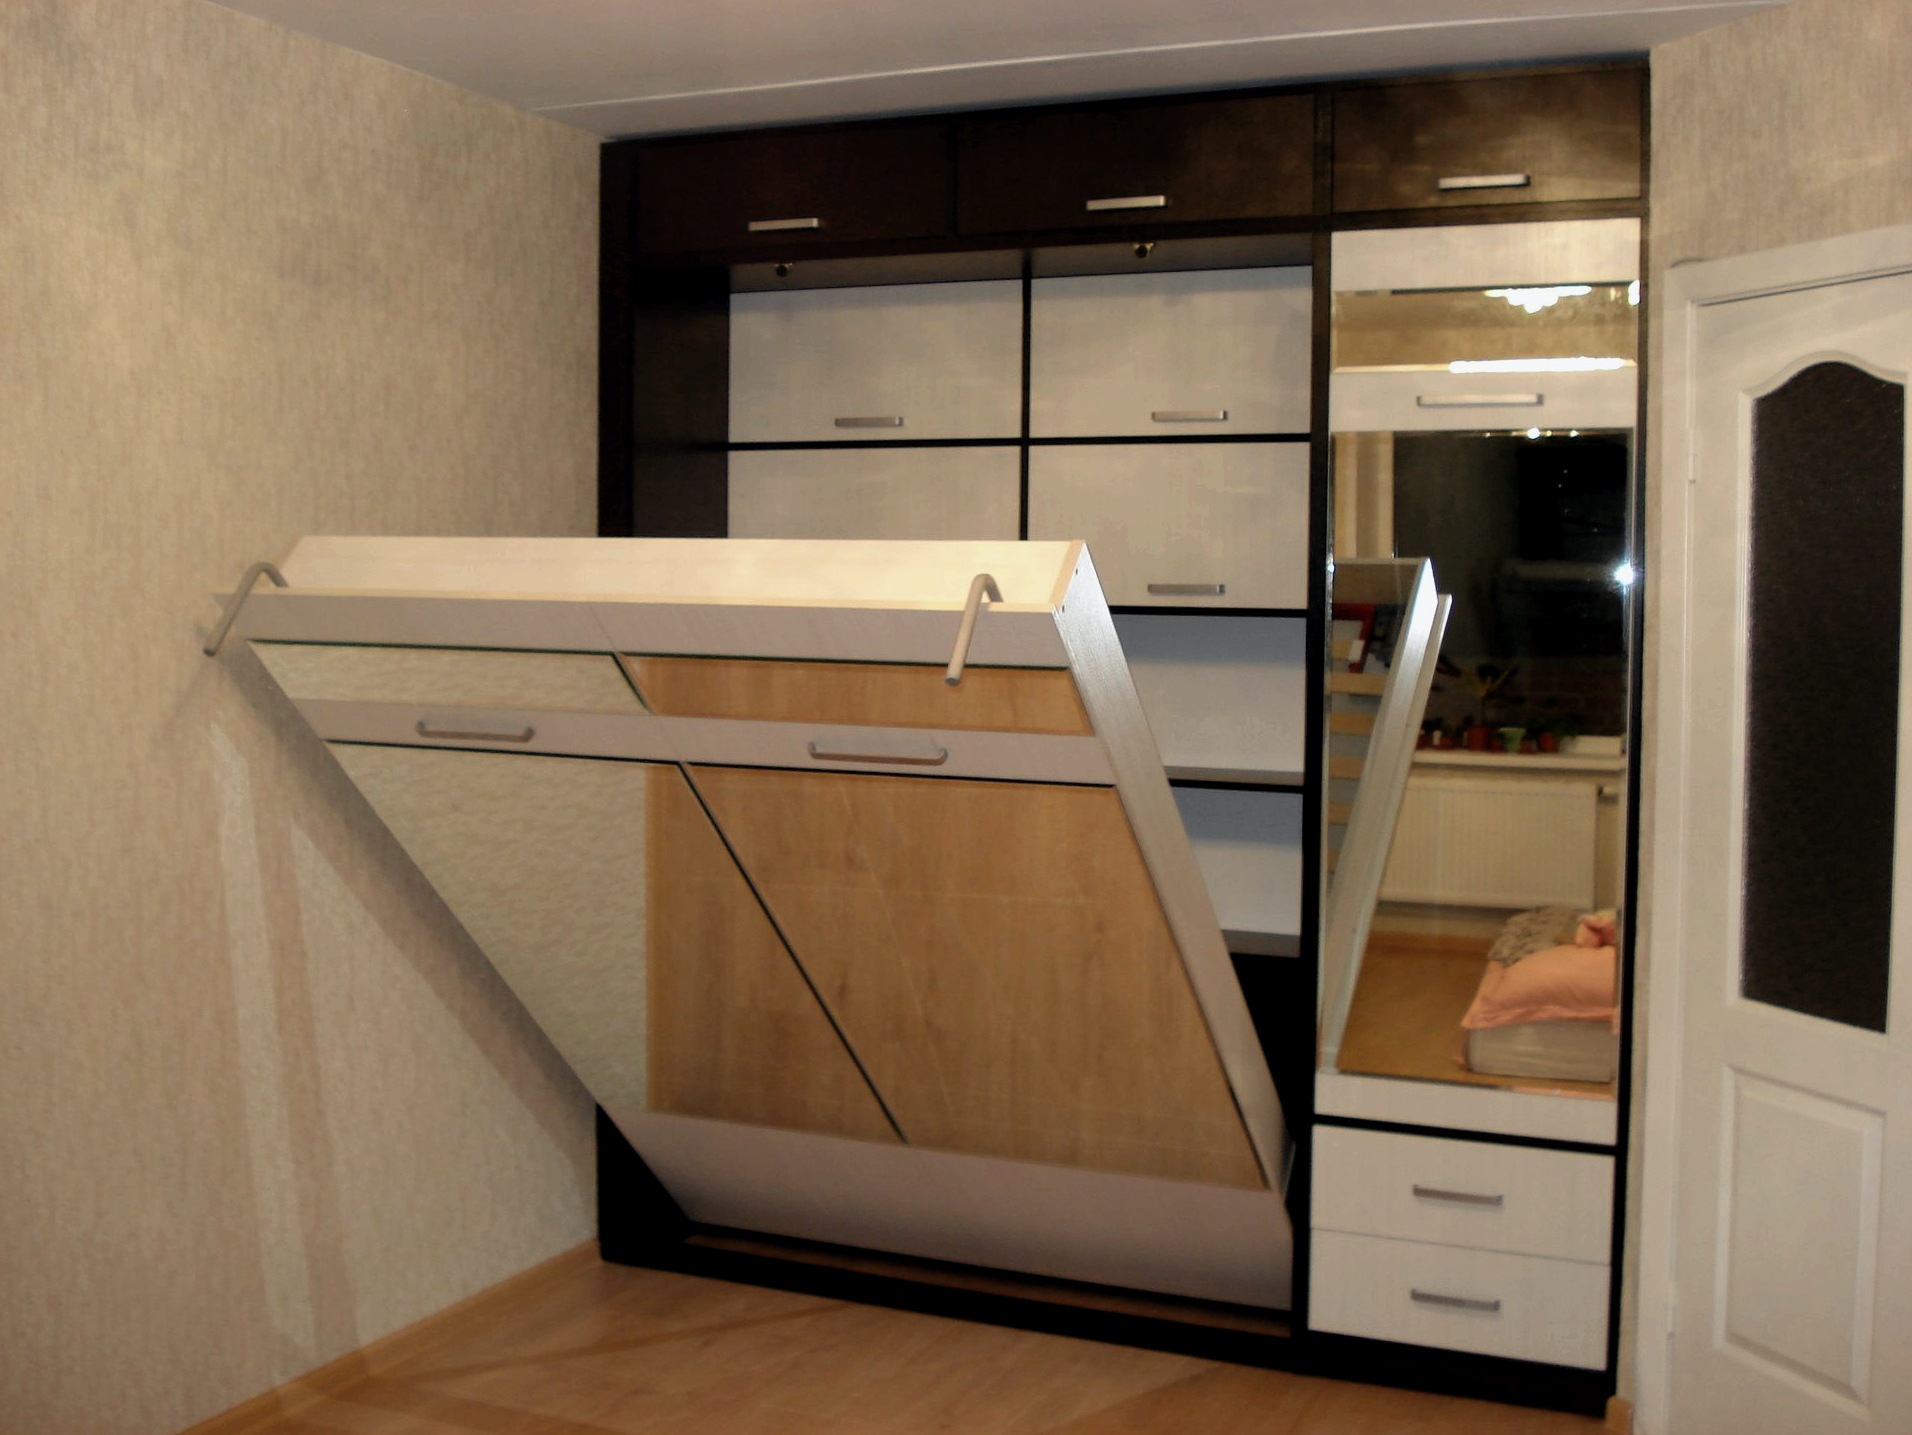 Dormitorio 9 metros cuadrados: secretos del autodesarrollo de un proyecto de diseño.